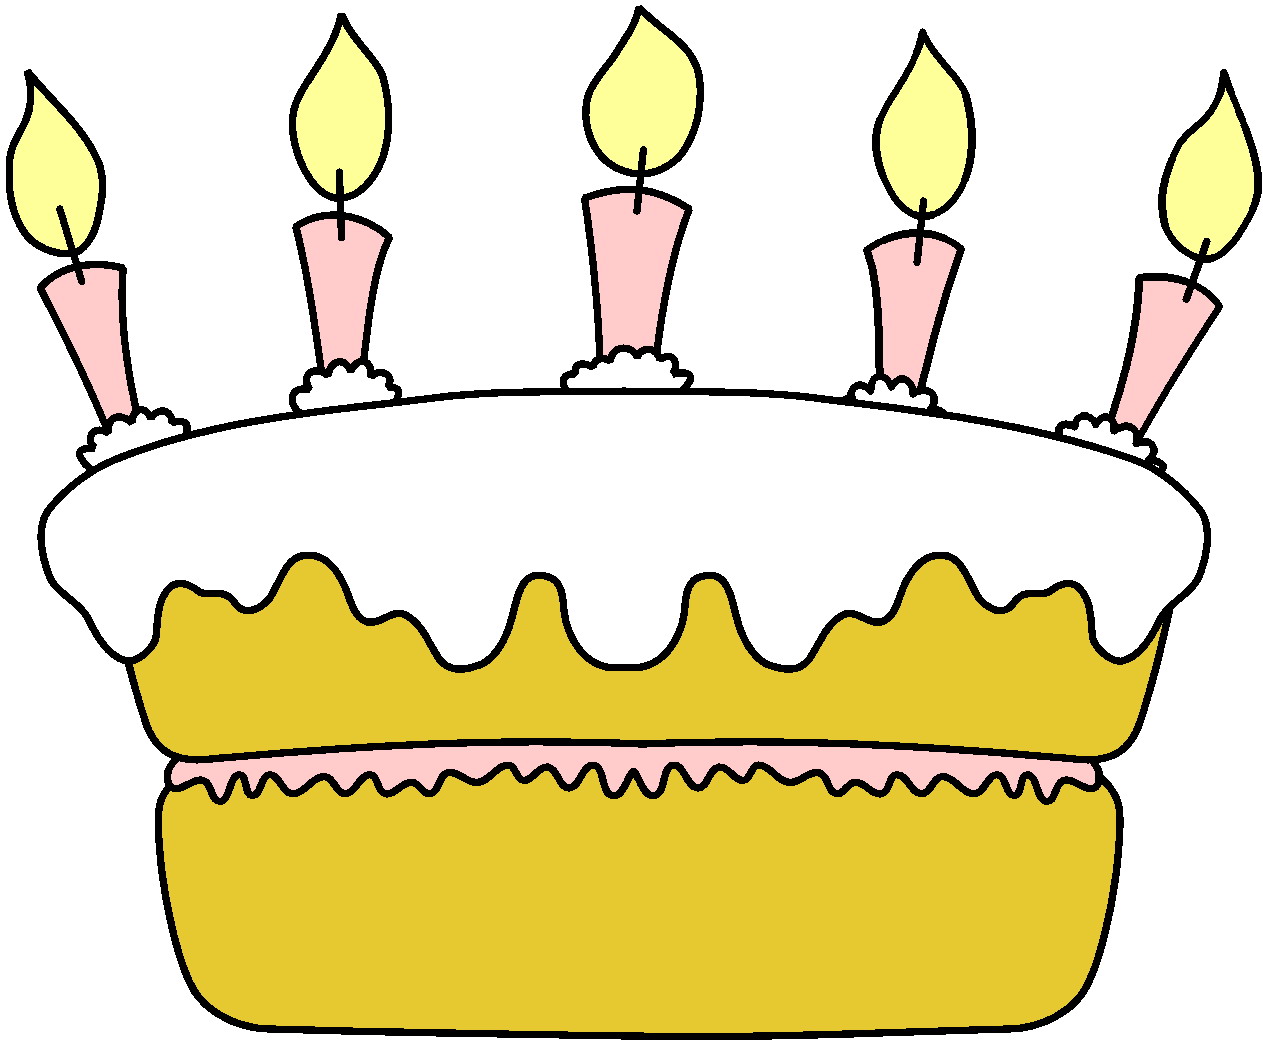 Торт 5 свечей. Рисунок на день рождения. Рисунки на деньрожднгия\\. Торт рисунок. Рескюунки на день рождения.